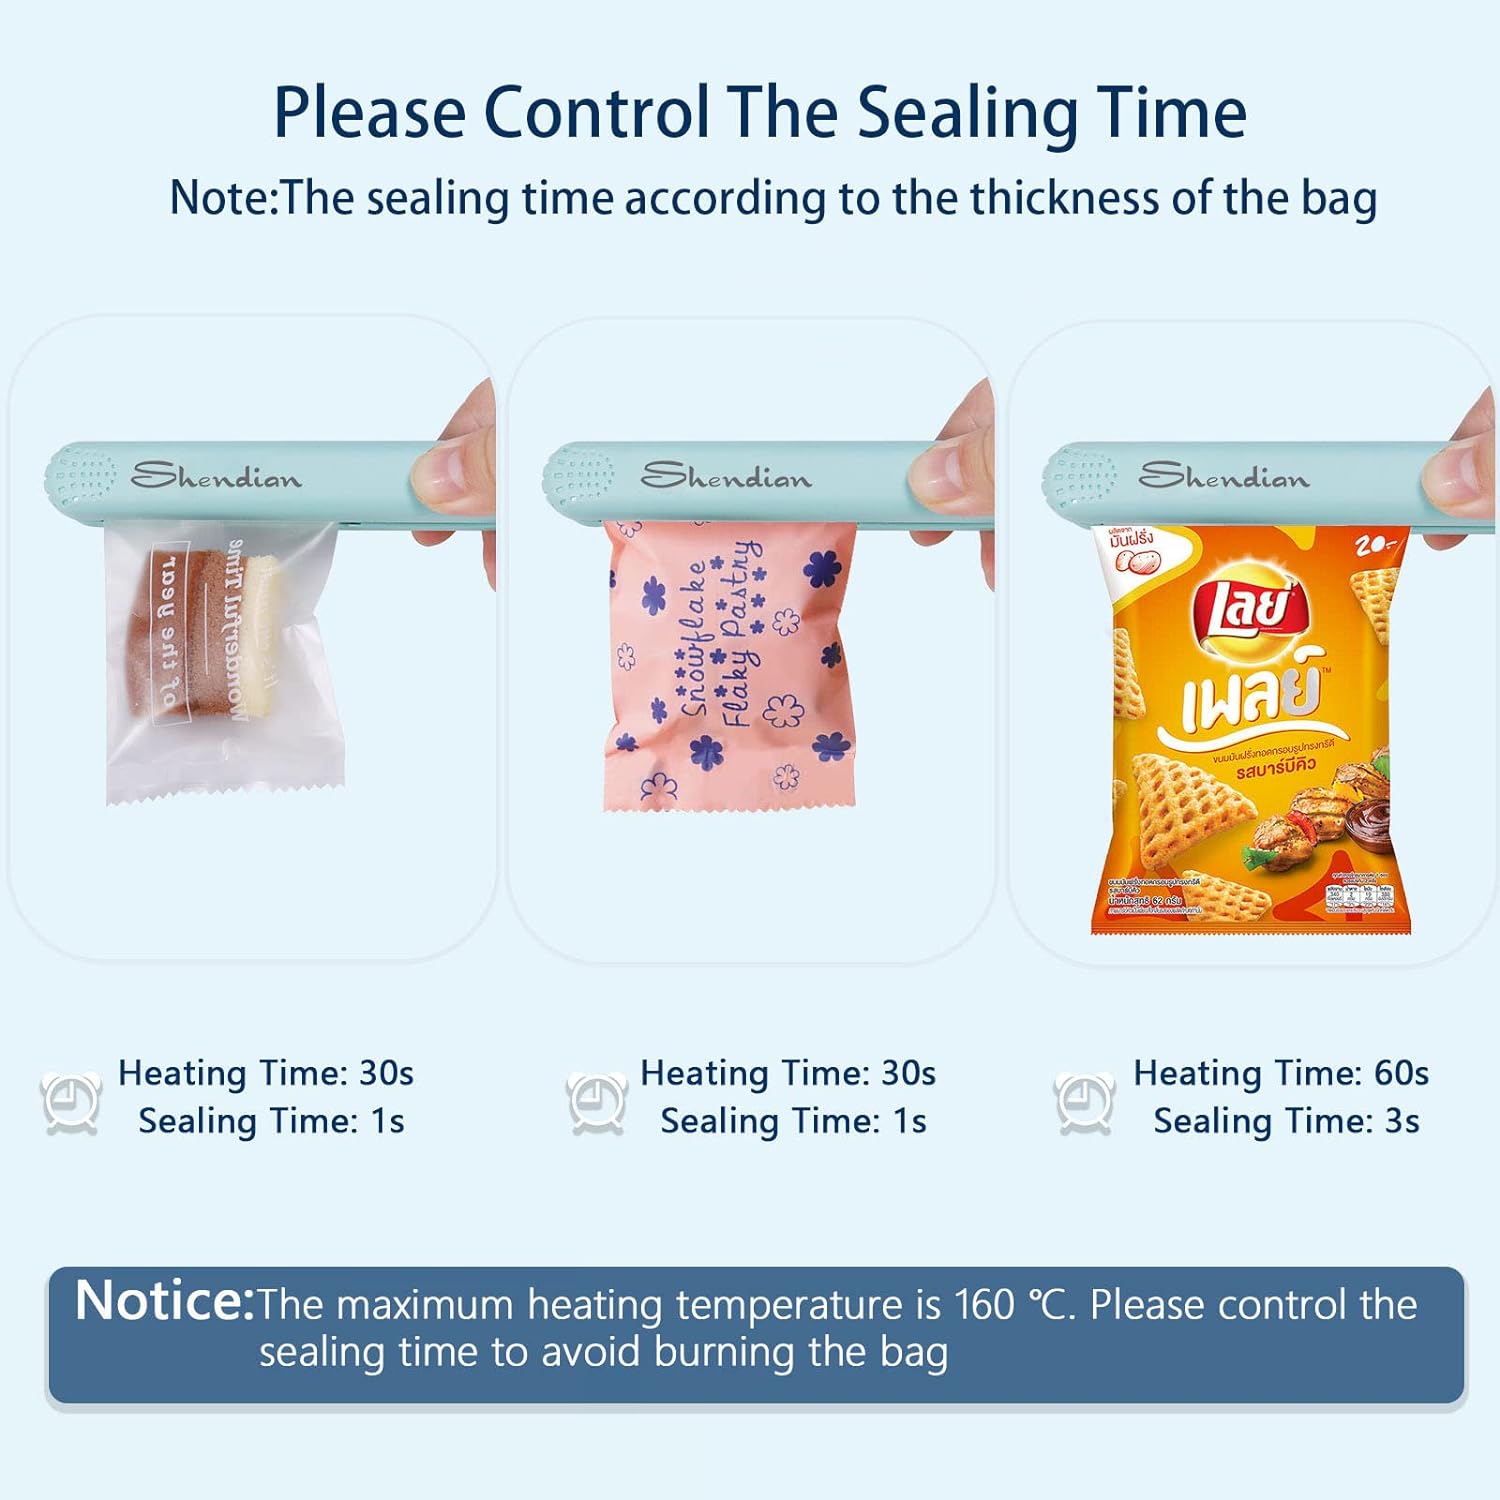 Mini Heat Bag Sealer - Portable Chip Sealer Kitchen Gadget, Food Seal Bag Resealer for Food Storage, Reusable Handheld Bag Sealer for Chip Bags, Foil Bags, Mylar Bags (Black)